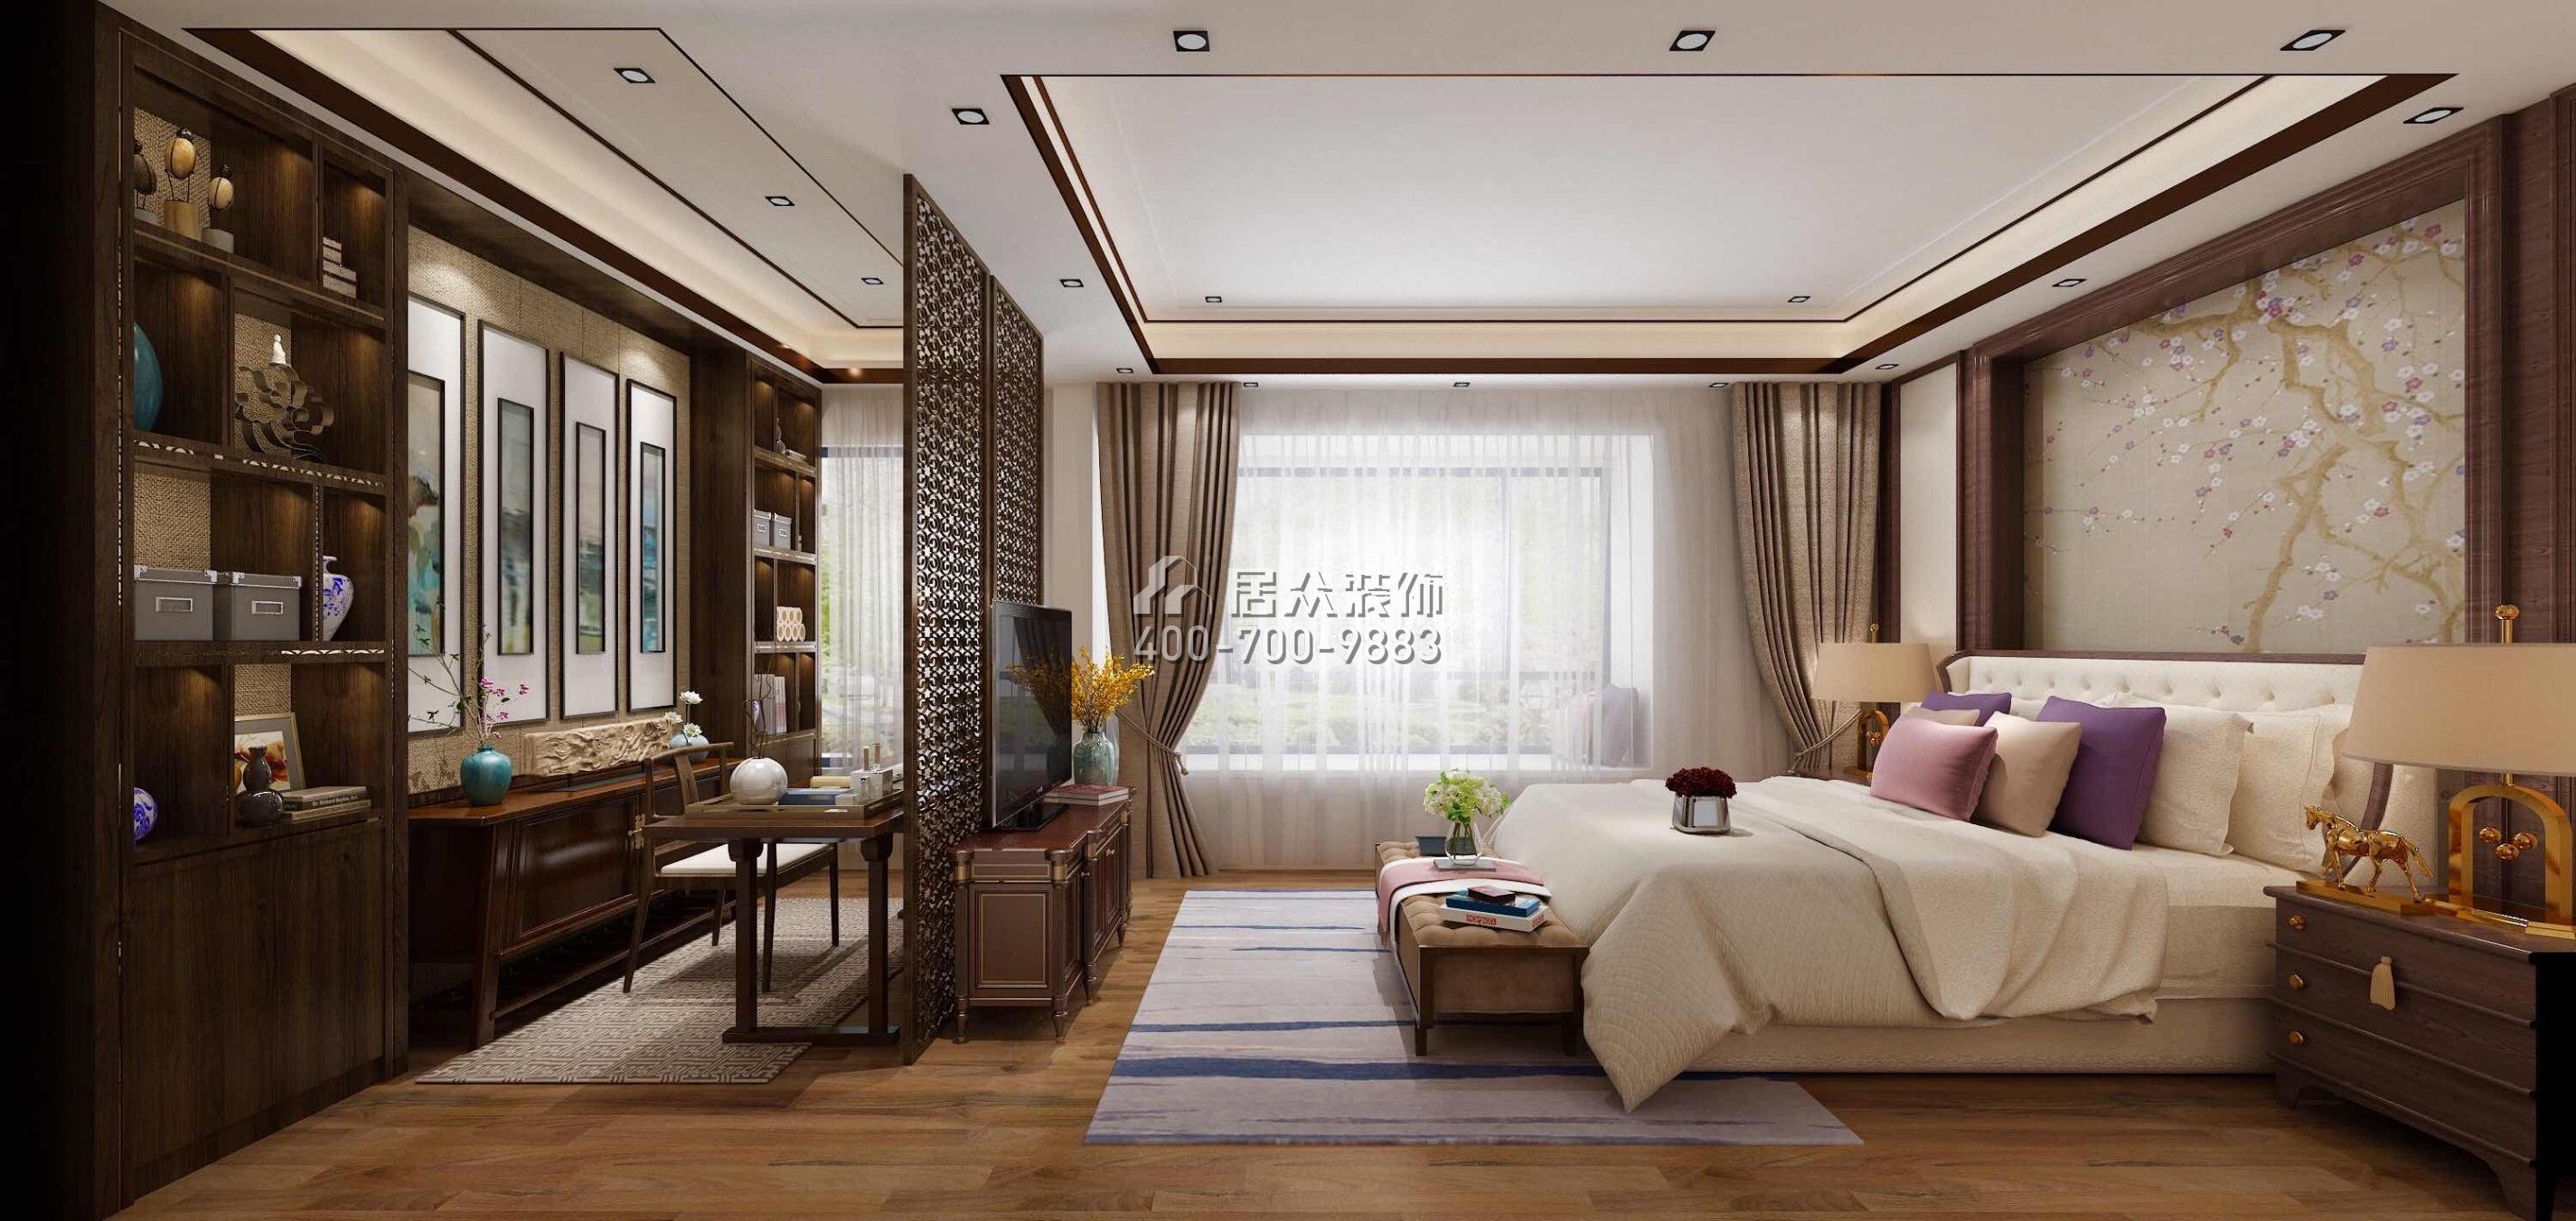 華發山莊330平方米中式風格復式戶型臥室裝修效果圖